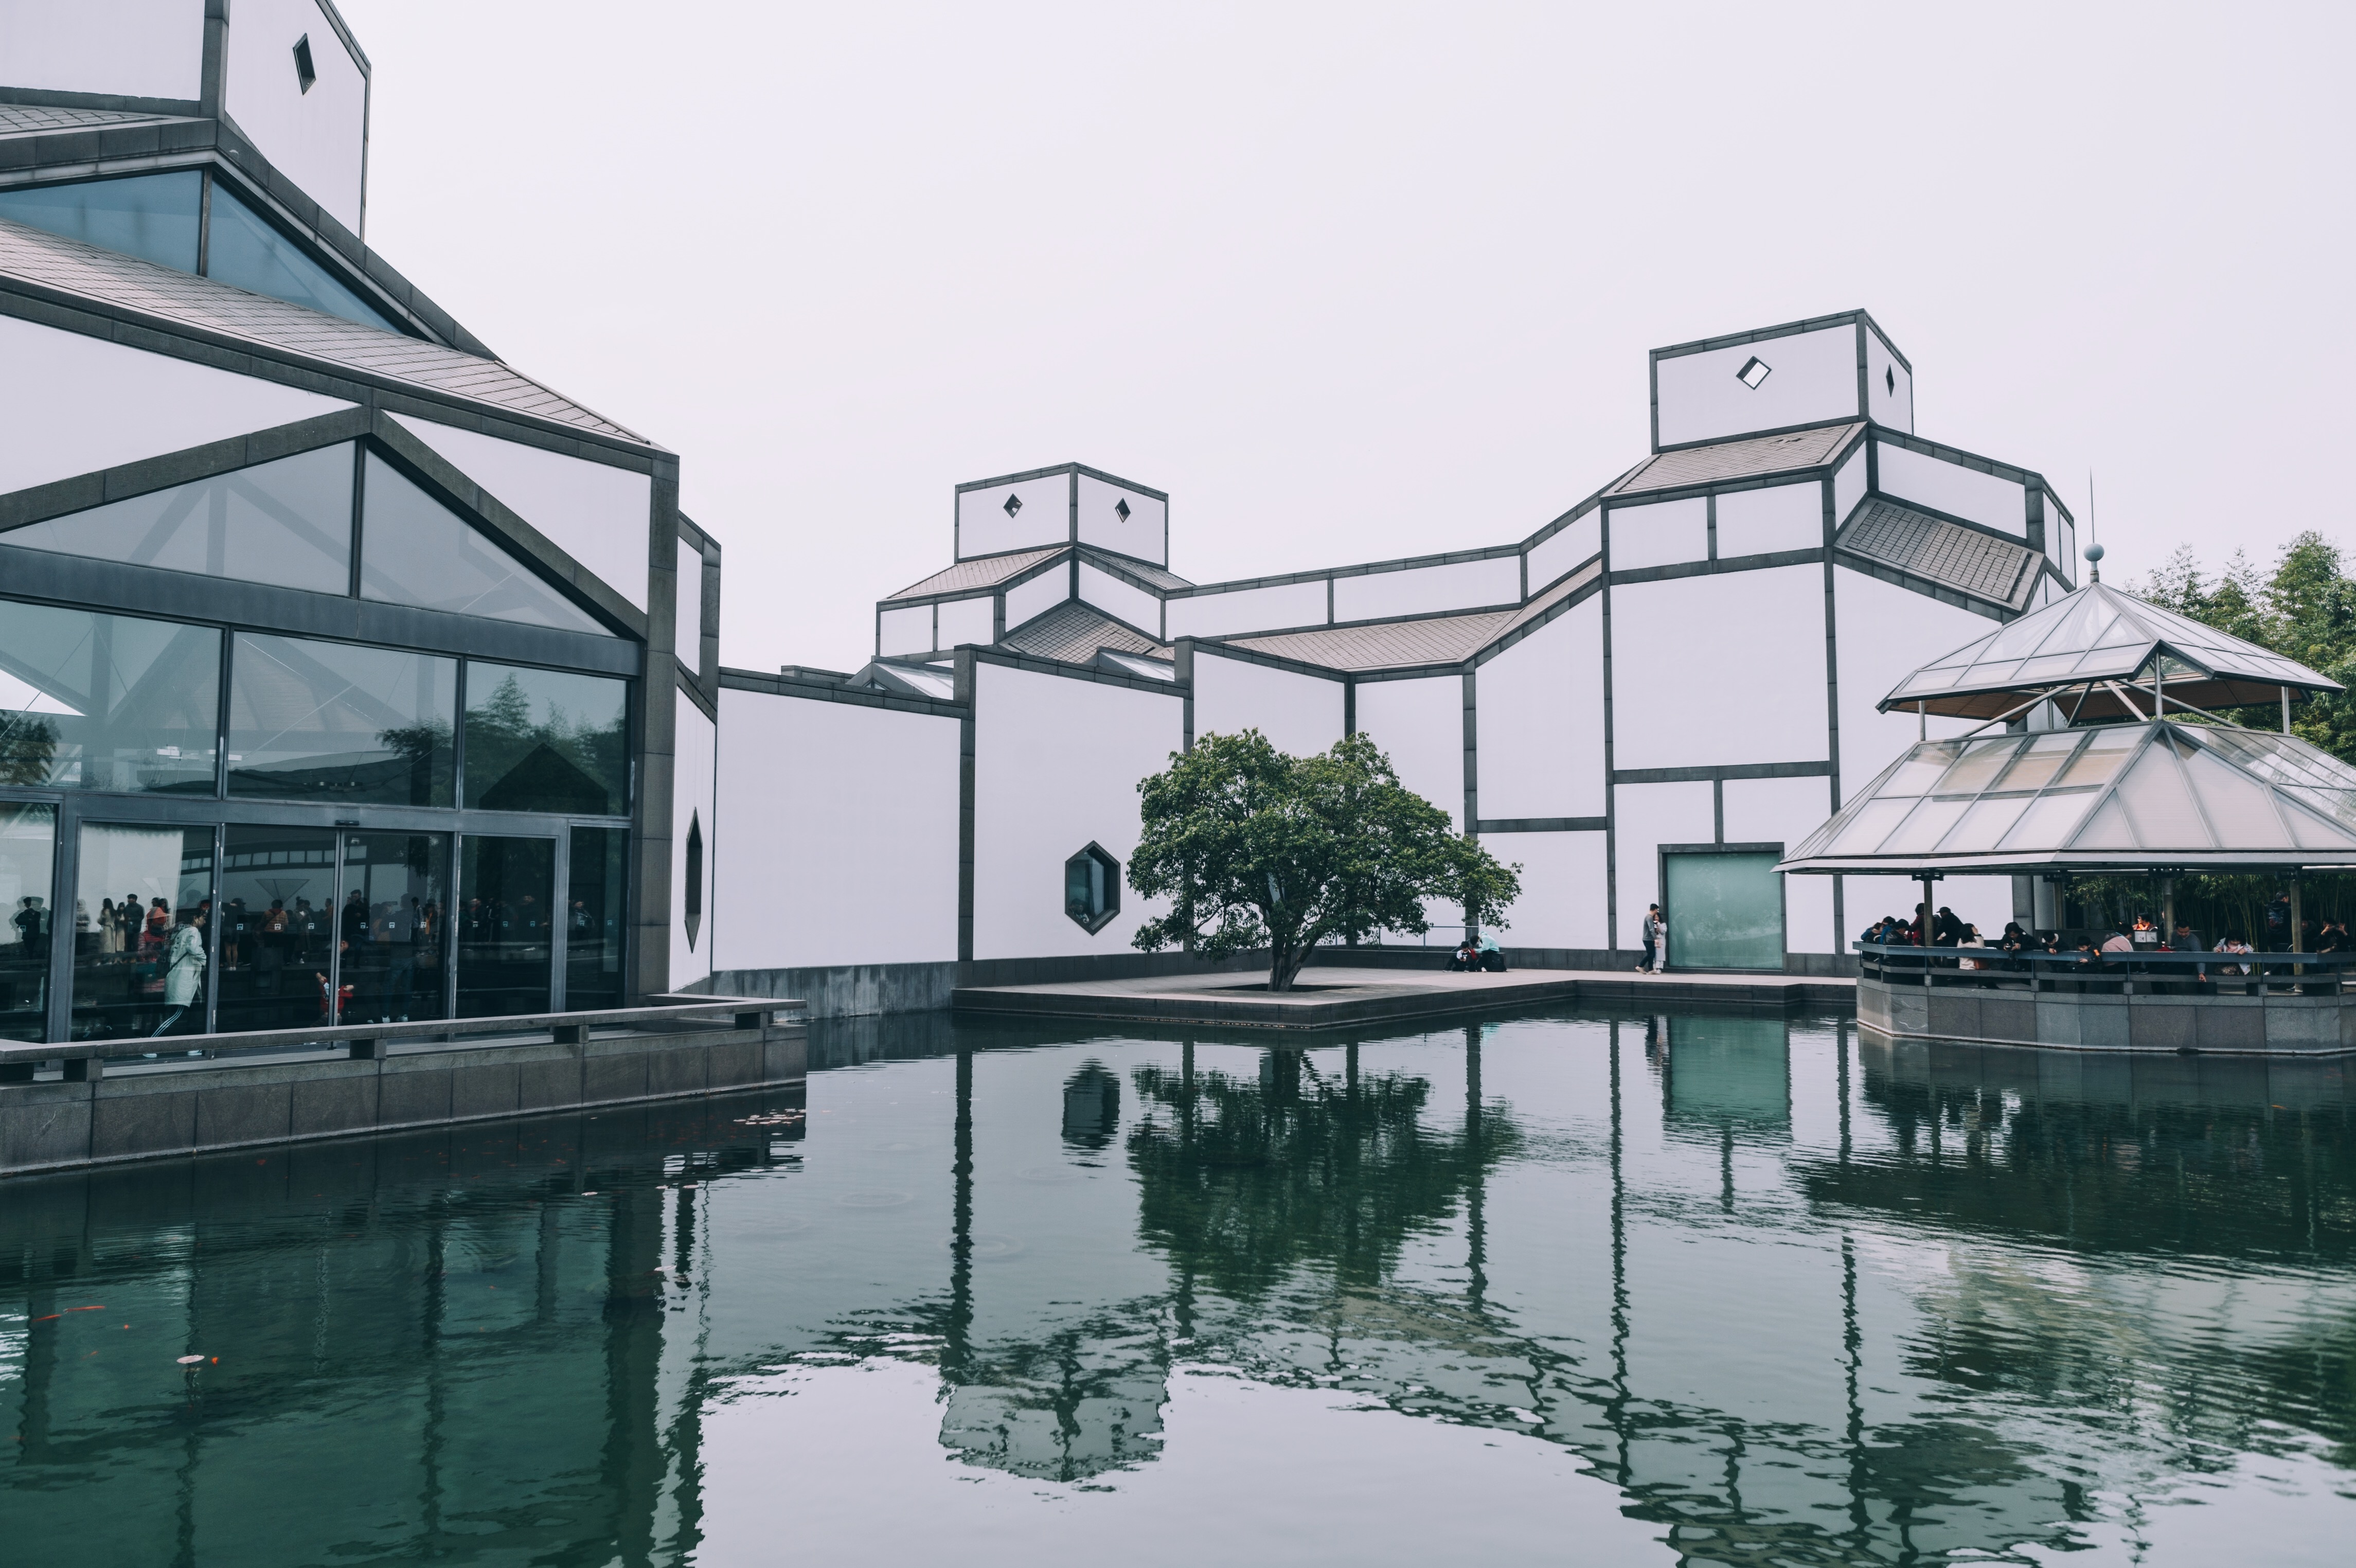 苏州博物馆,国内十大最美博物馆之一,建筑大师贝聿铭的封山之作